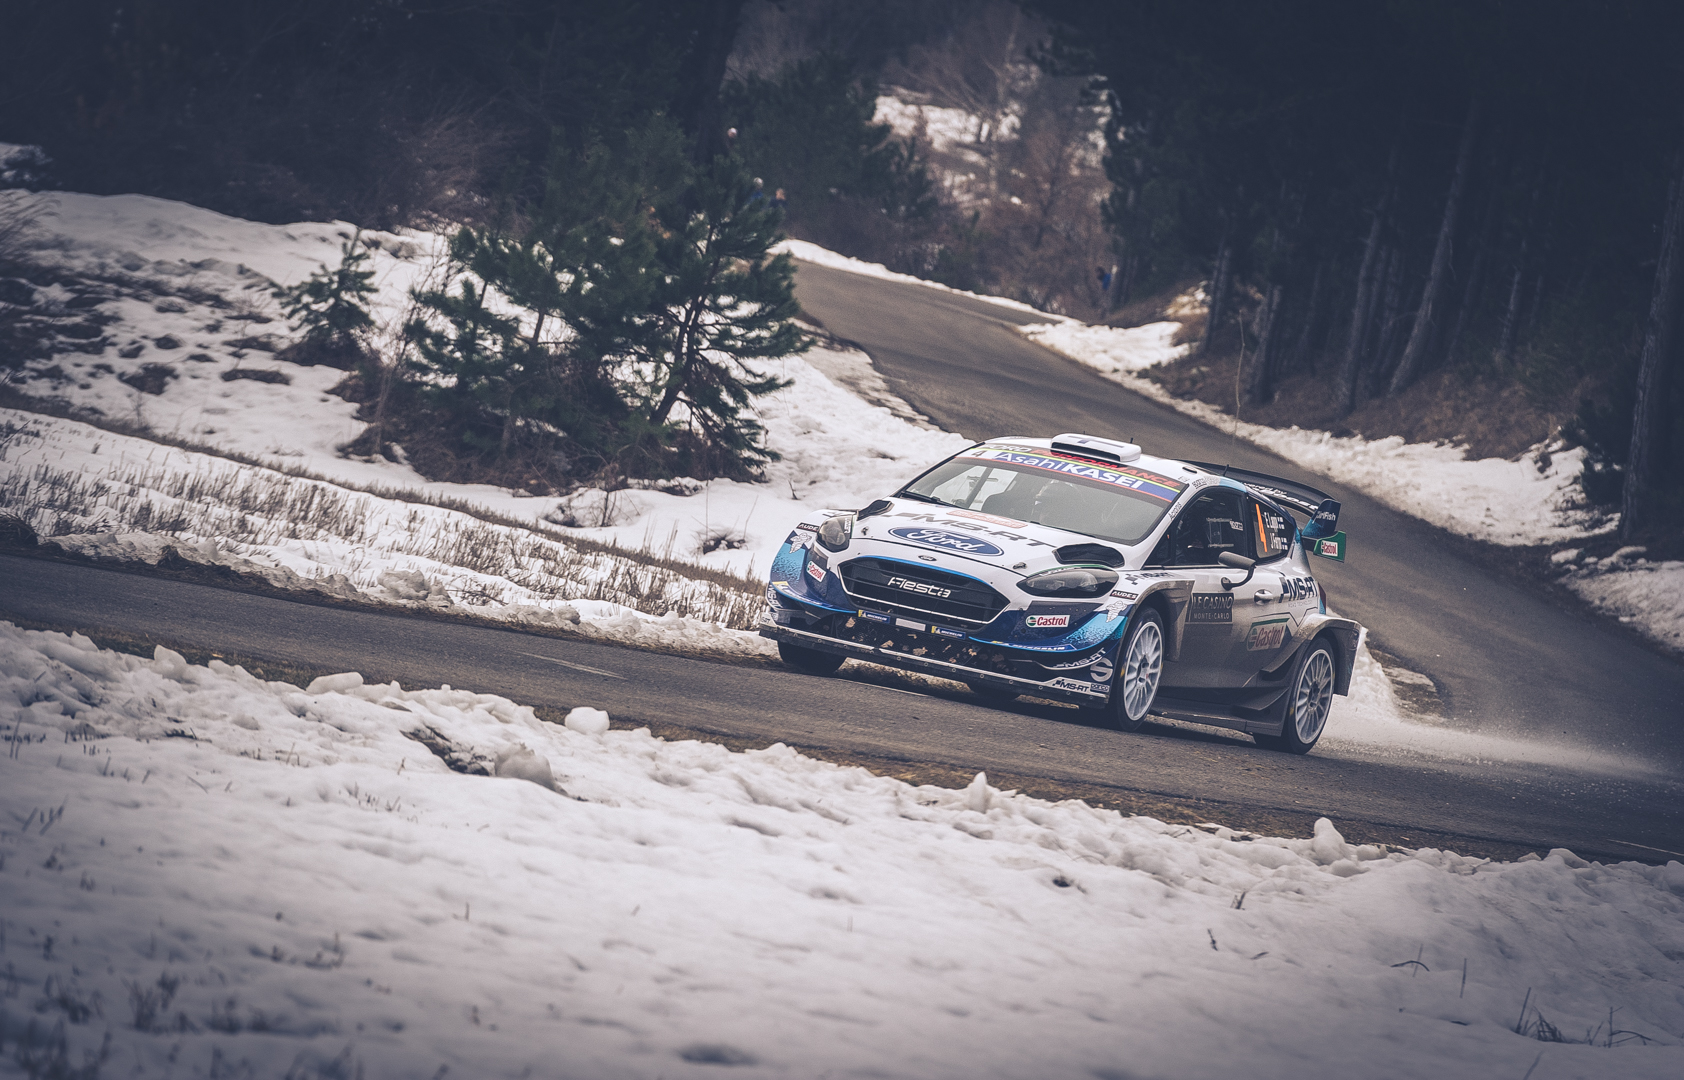 Photographie de Sport, en mode Rallye lors de la manche WRC du Rallye du Monte Carlo avec Lappi